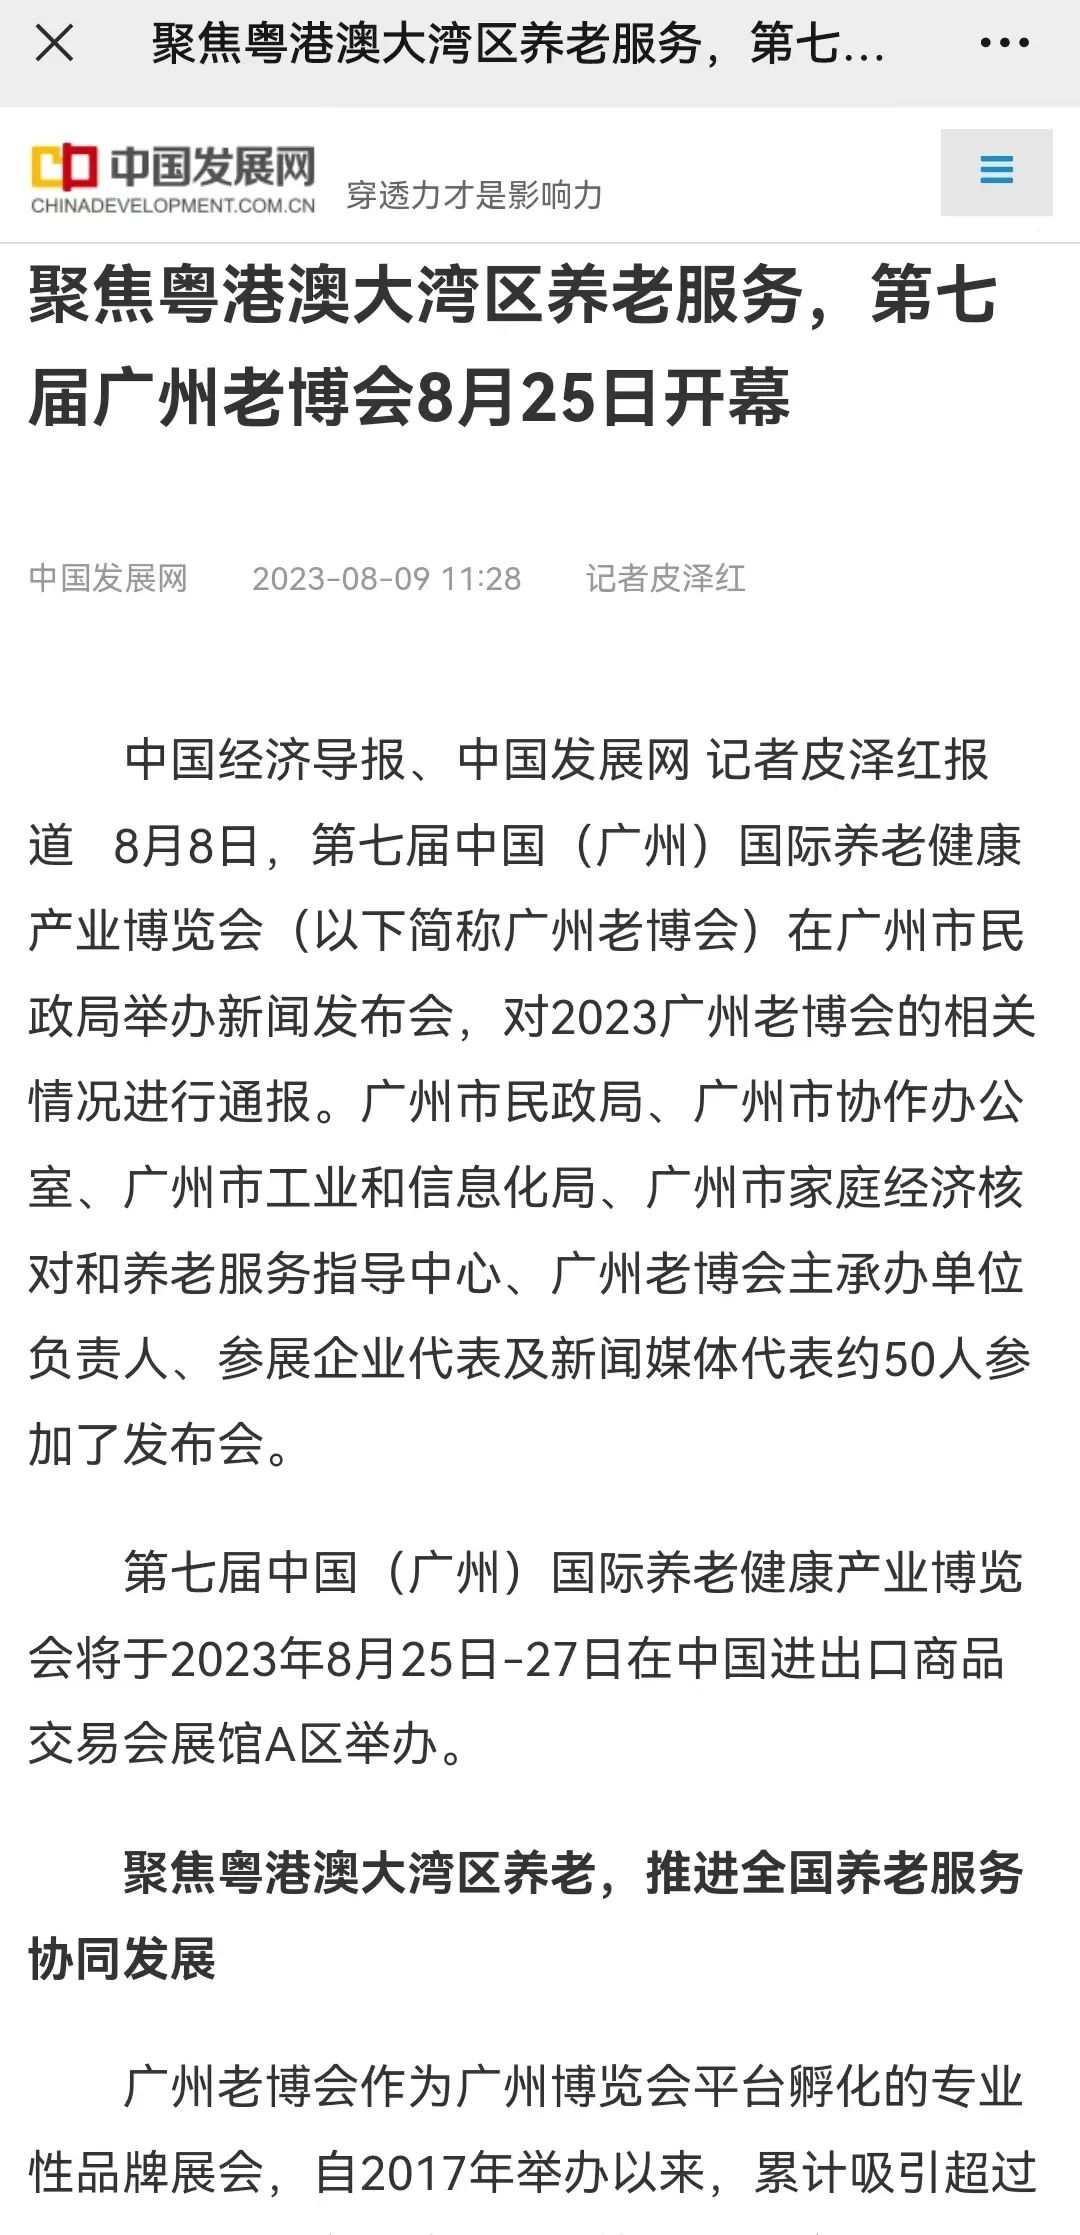 实力刷屏！中国日报等多家媒体关注报道第七届广州老博会5.jpg